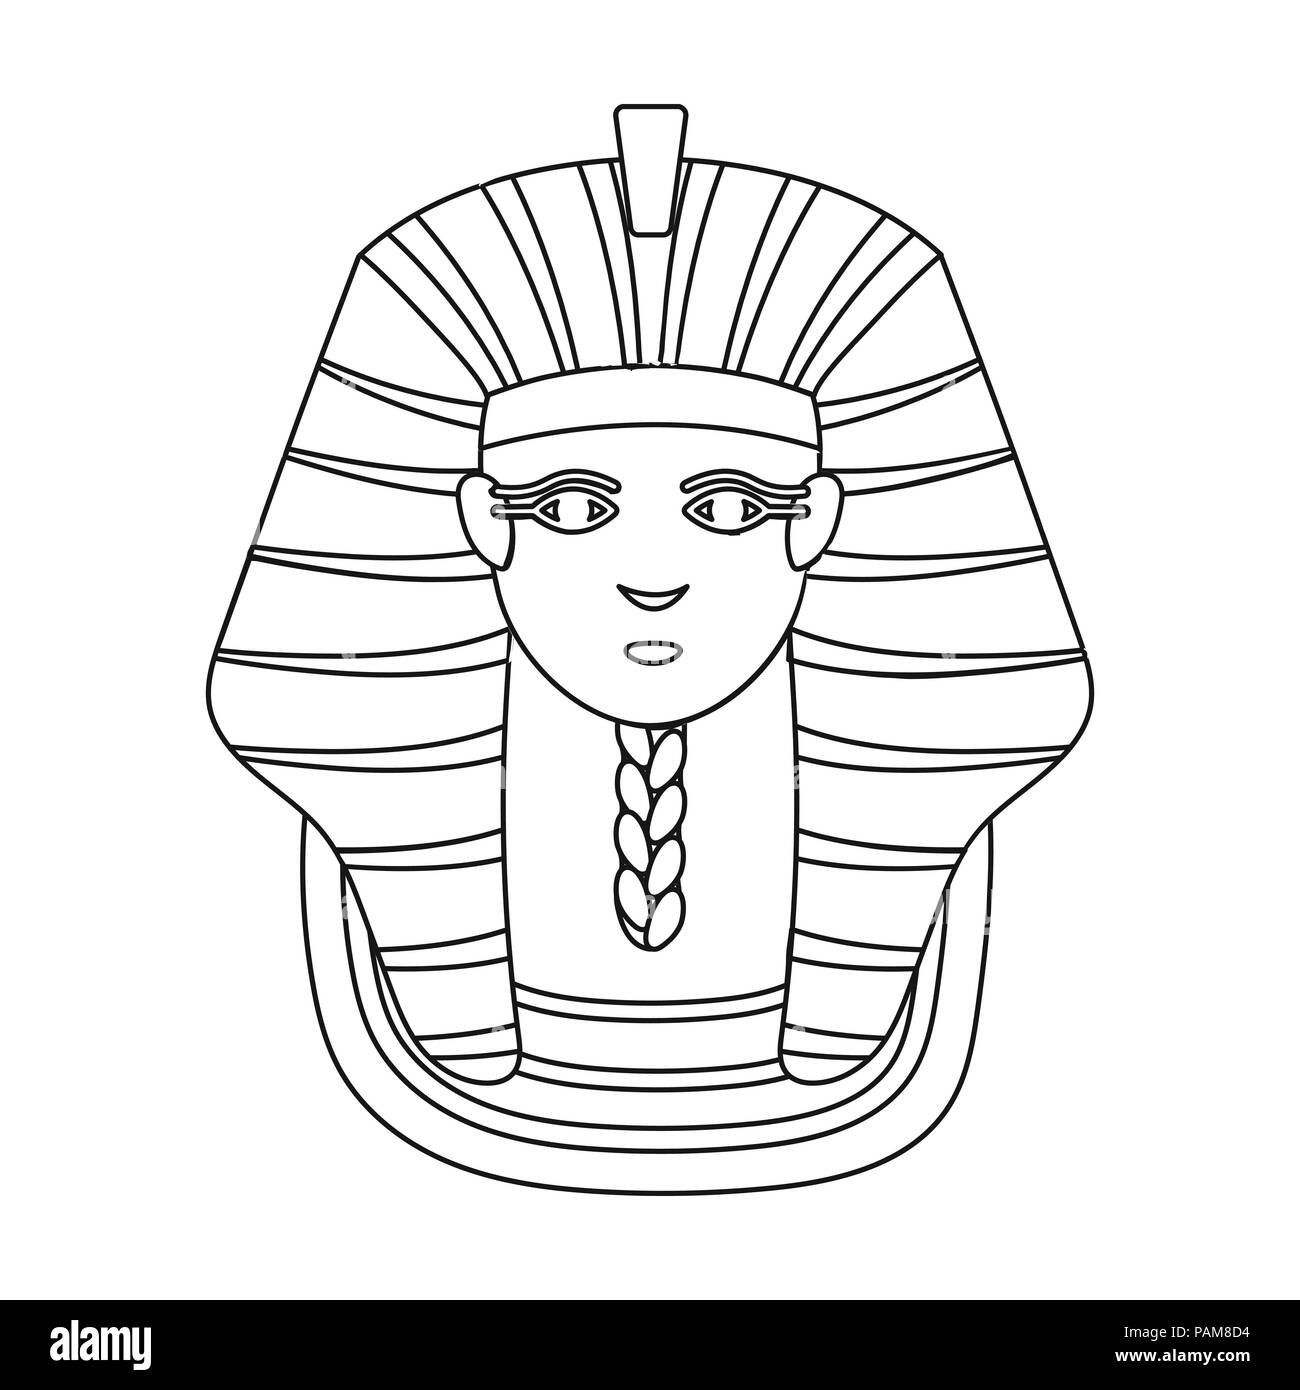 Маска фараона рисунок 5. Маска фараона Тутанхамона изо. Маска фараона Тутанхамона изо 5 класс. Маска фараона Тутанхамона рисунок. Фараон Египта Тутанхамон изо 5 класс.